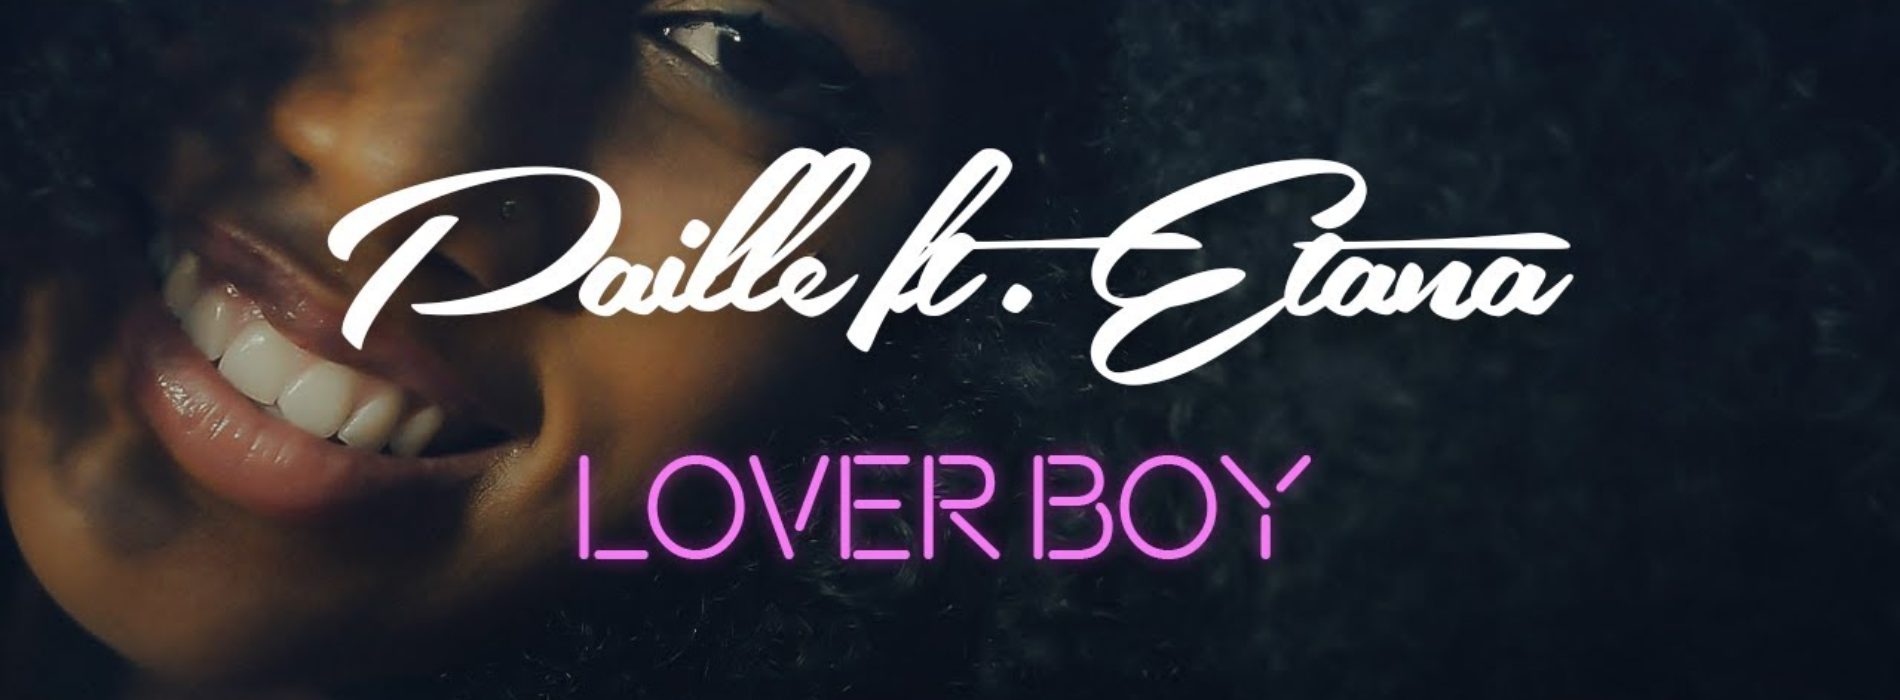 PAILLE feat. ETANA – Loverboy – Mai 2020